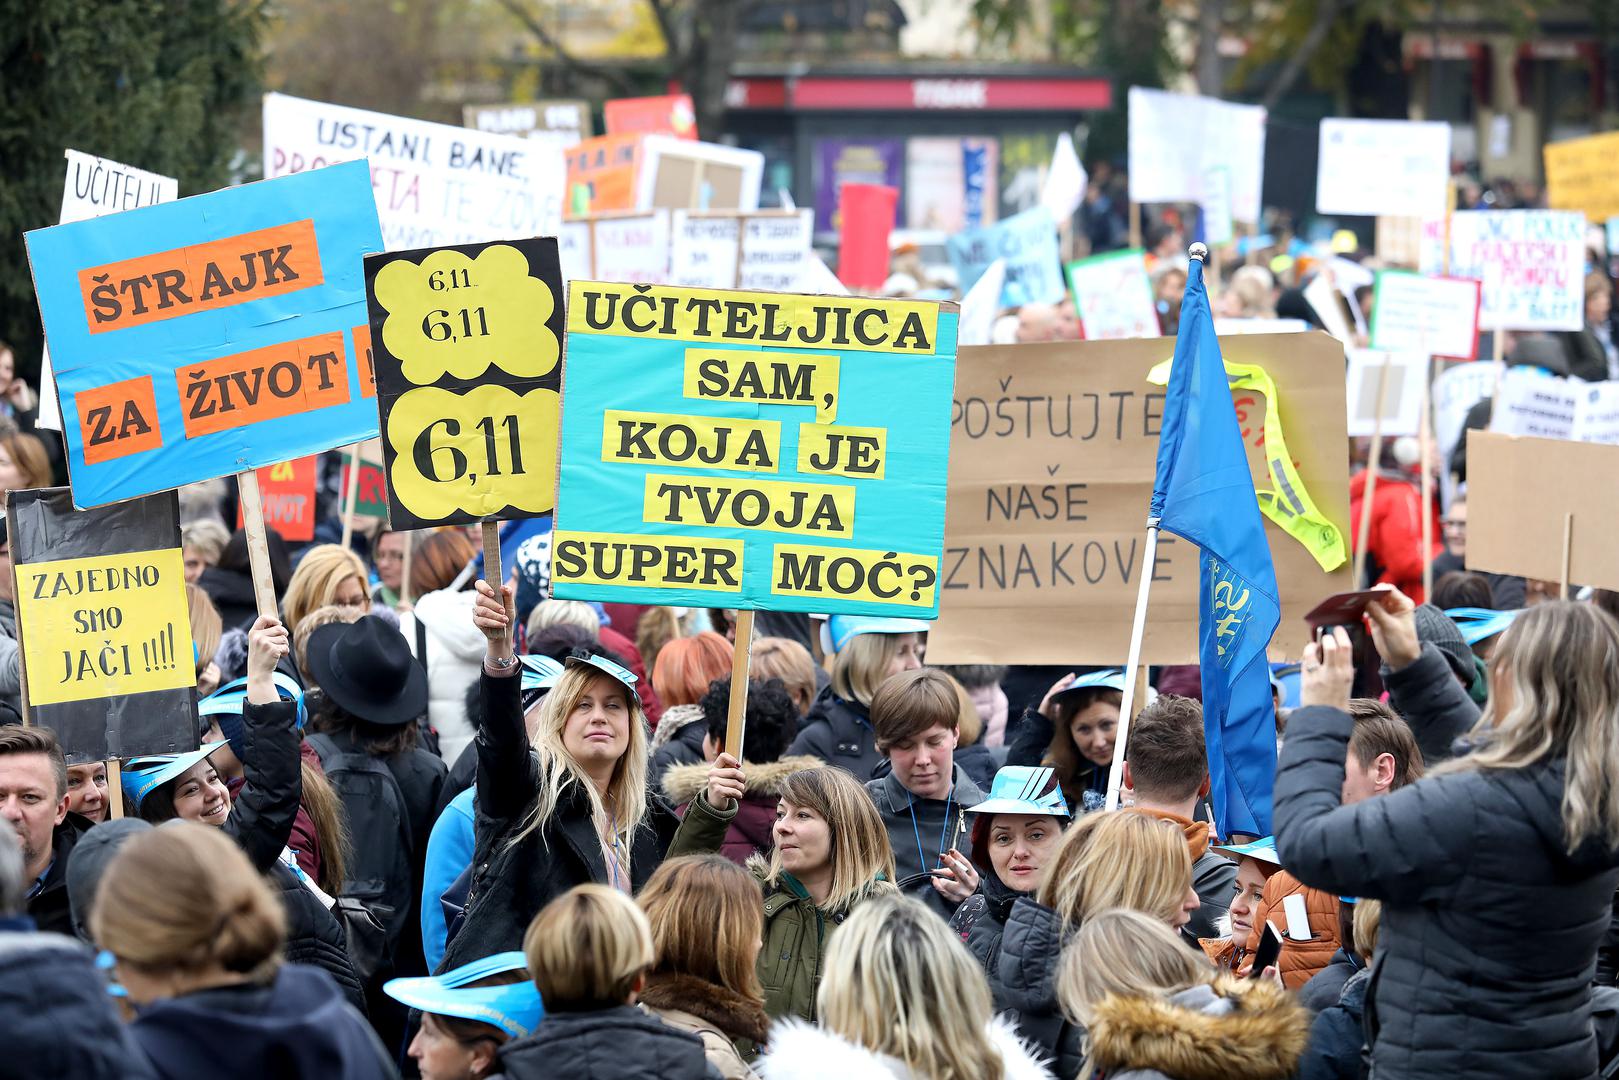 Veliki prosvjed učitelja i profesora održan je danas u Zagrebu